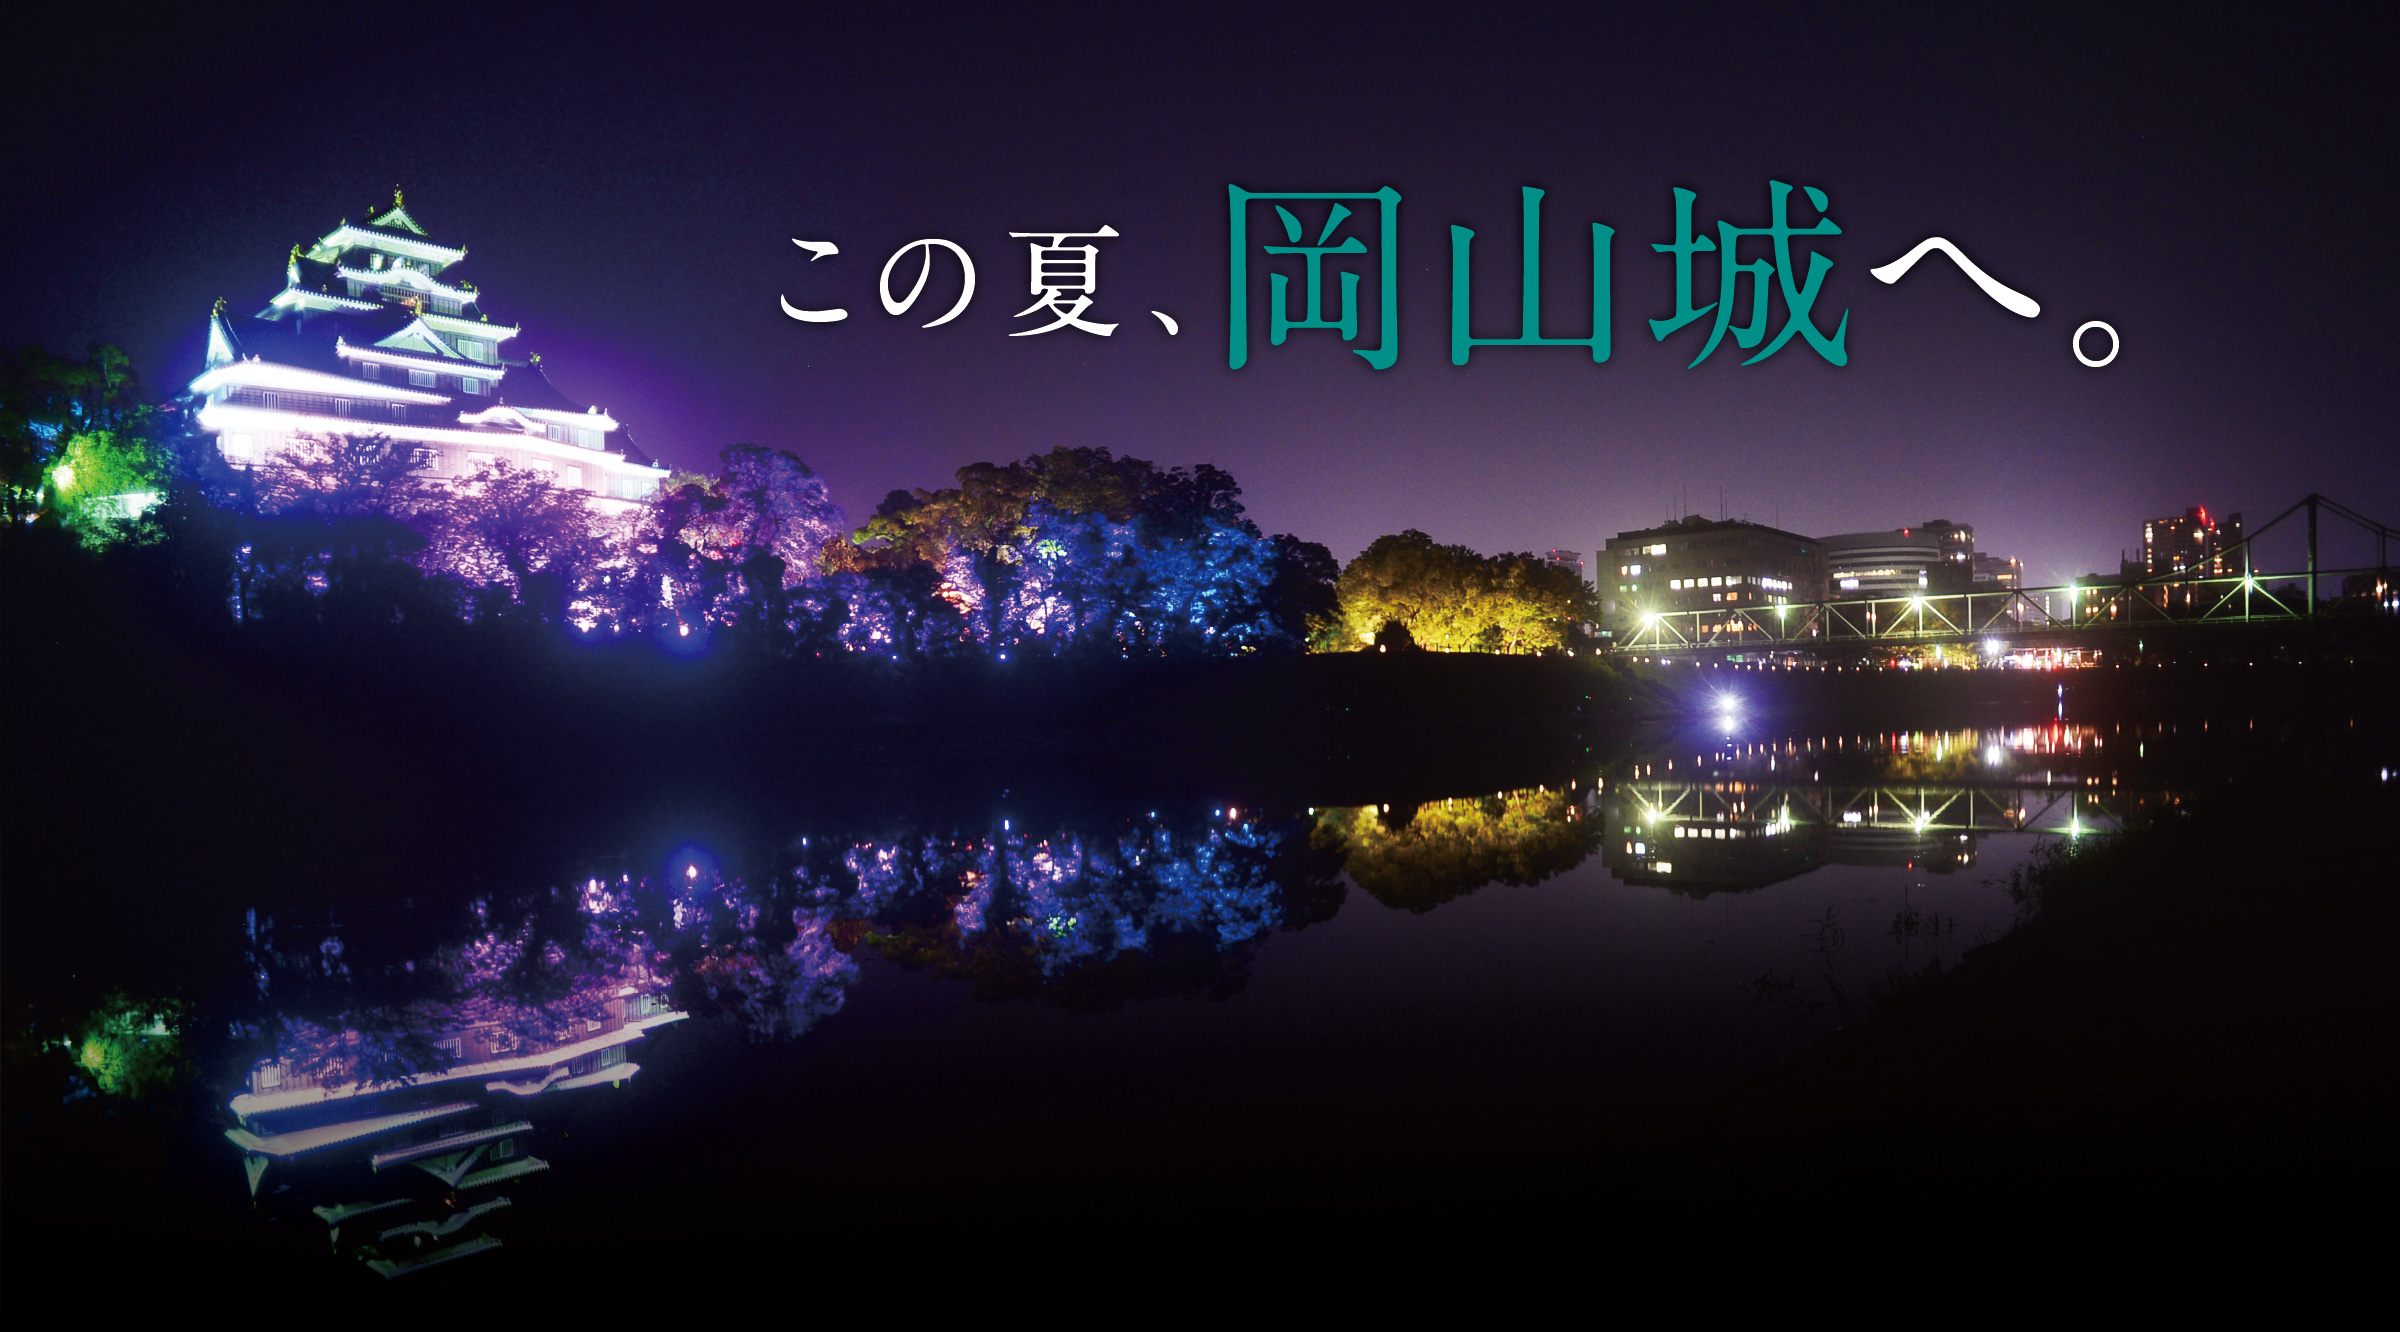 岡山城夜間特別開館 春の烏城灯源郷 Okayama Castle Special Late-Night Castle Opening and Illumination Event Ujo-Togenkyo - Spring Castle Illumination